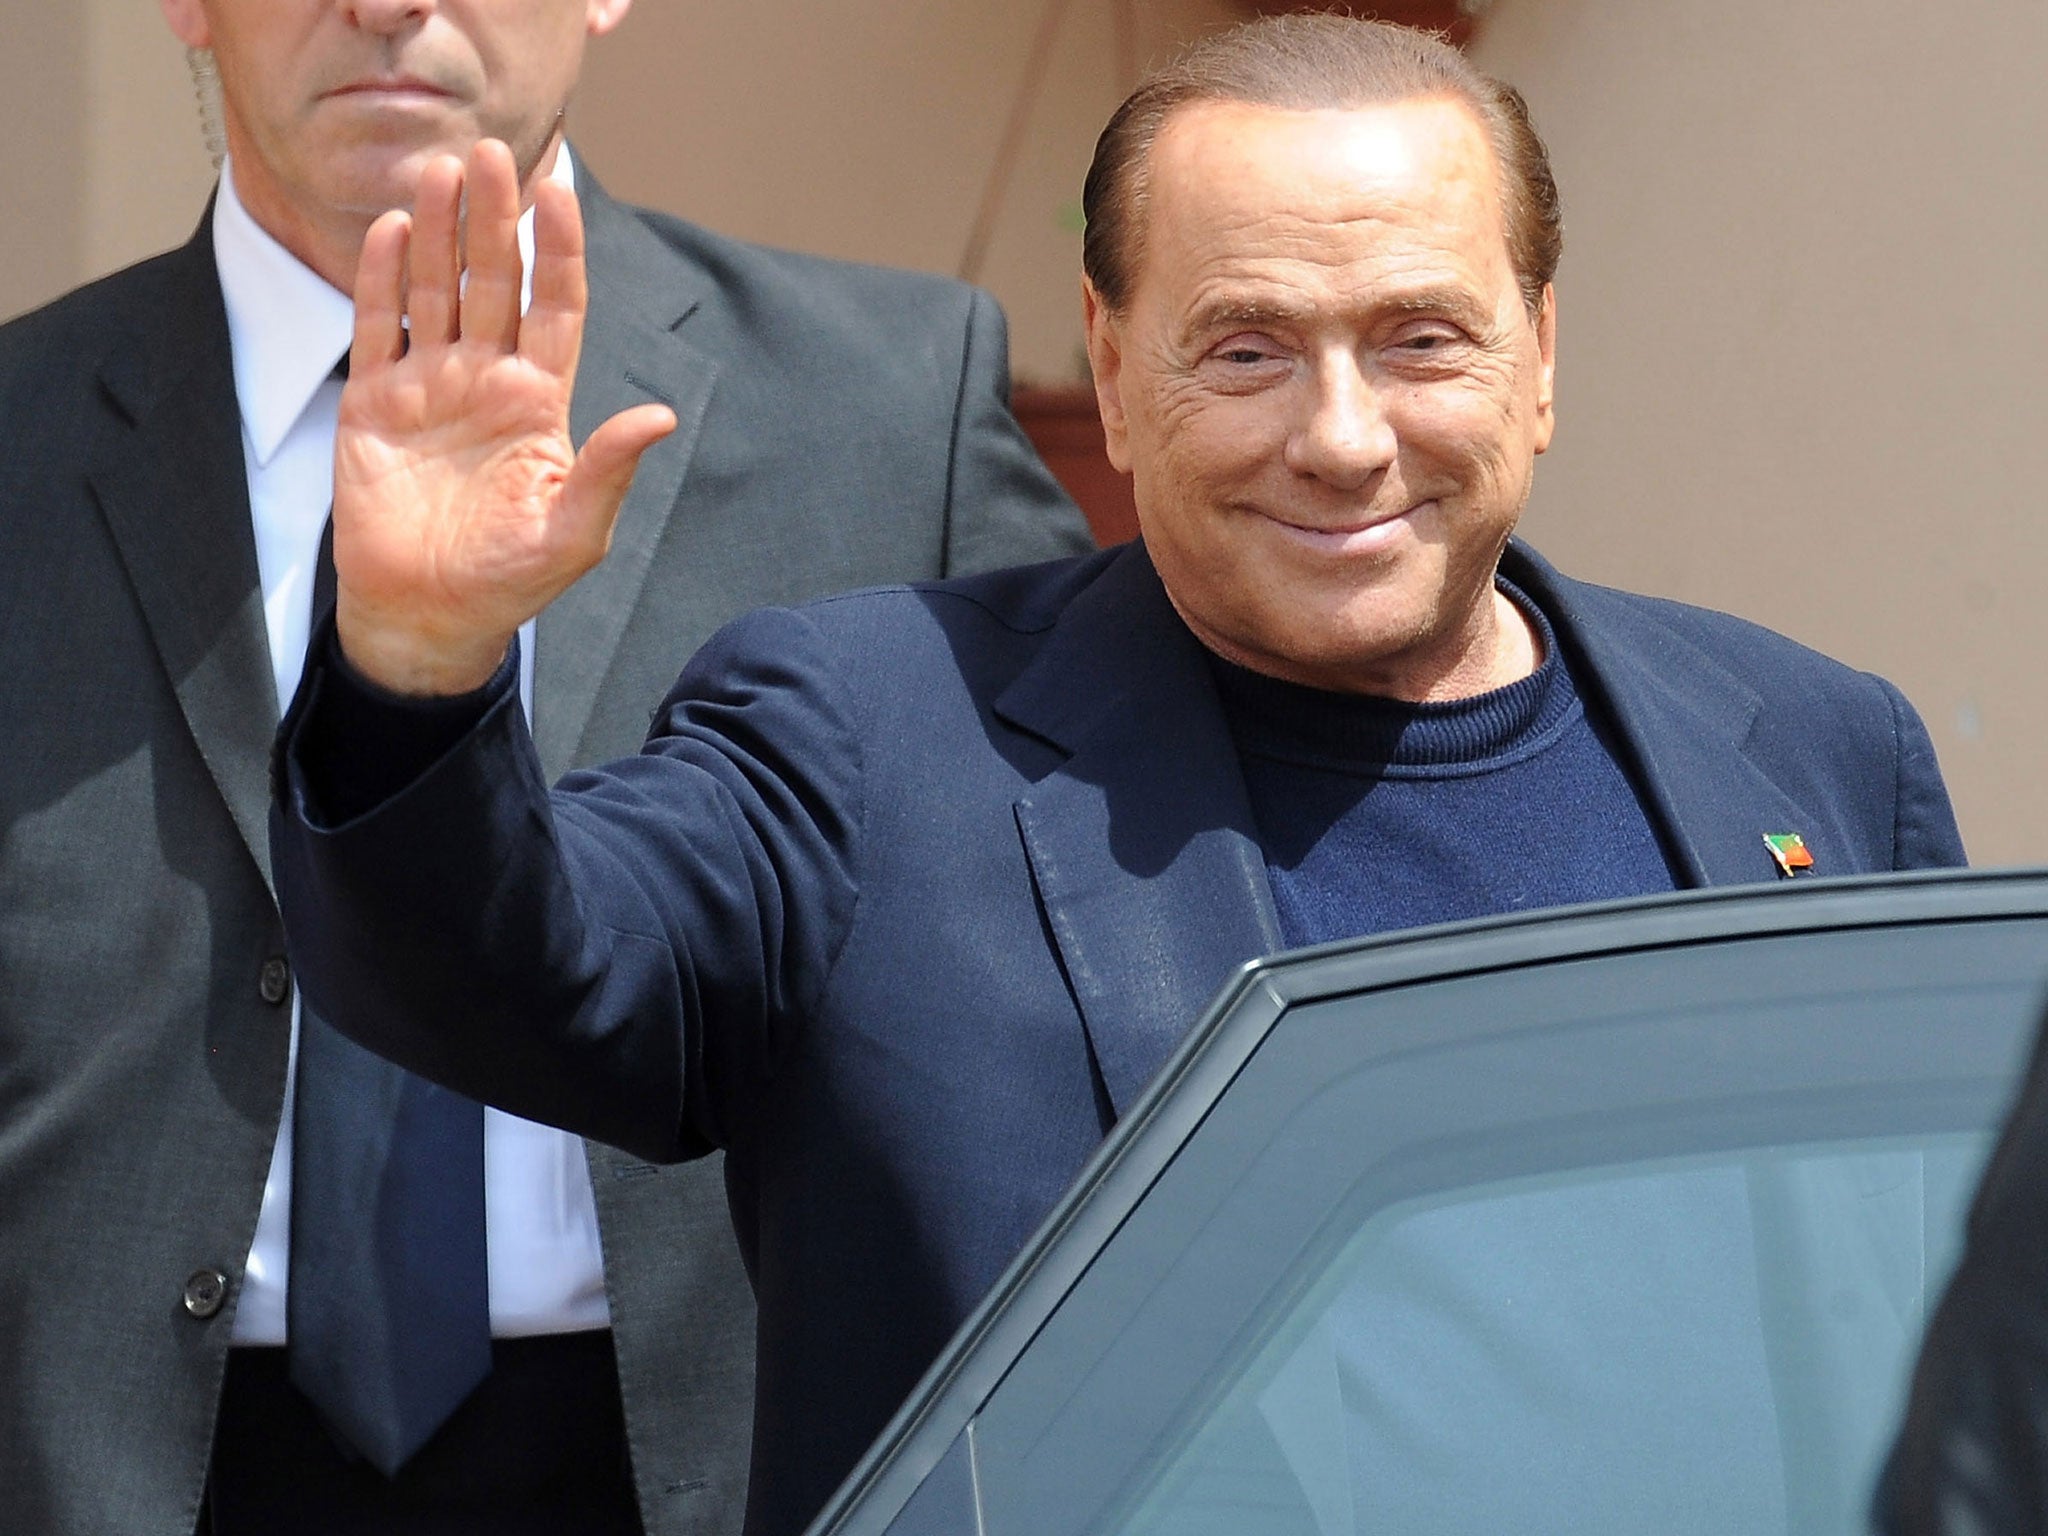 Silvio Berlusconi leaves the Fondazione Sacra Famiglia on May 9, 2014 in Milan, Italy.